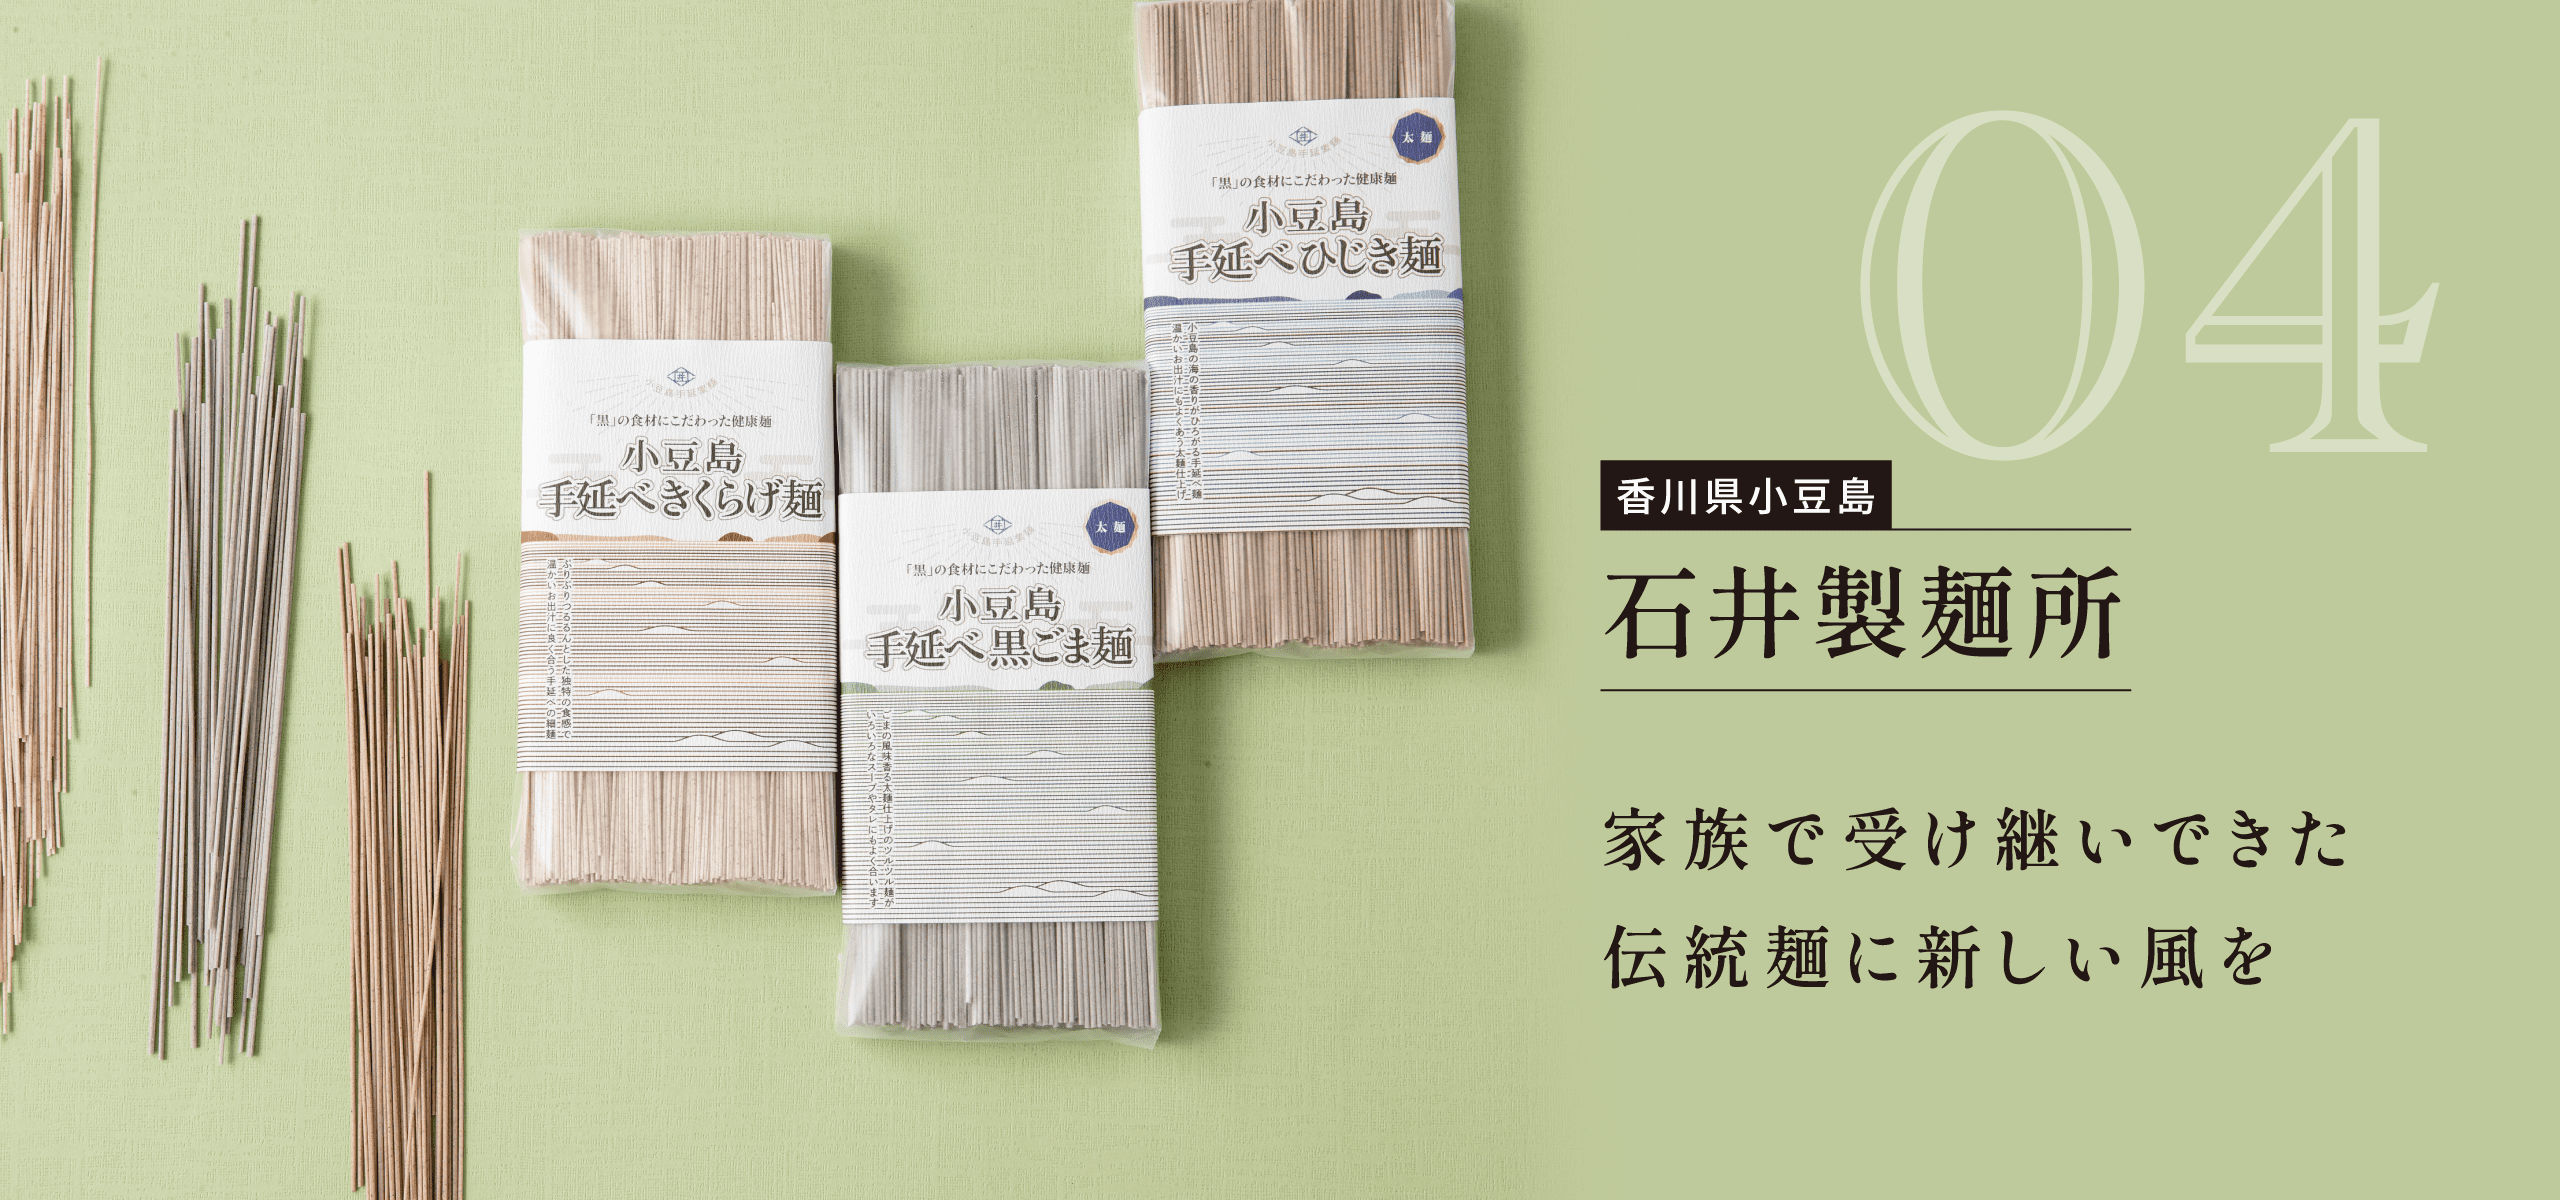 香川県小豆島 石井製麺所 家族で受け継いできた伝統麺に新しい風を